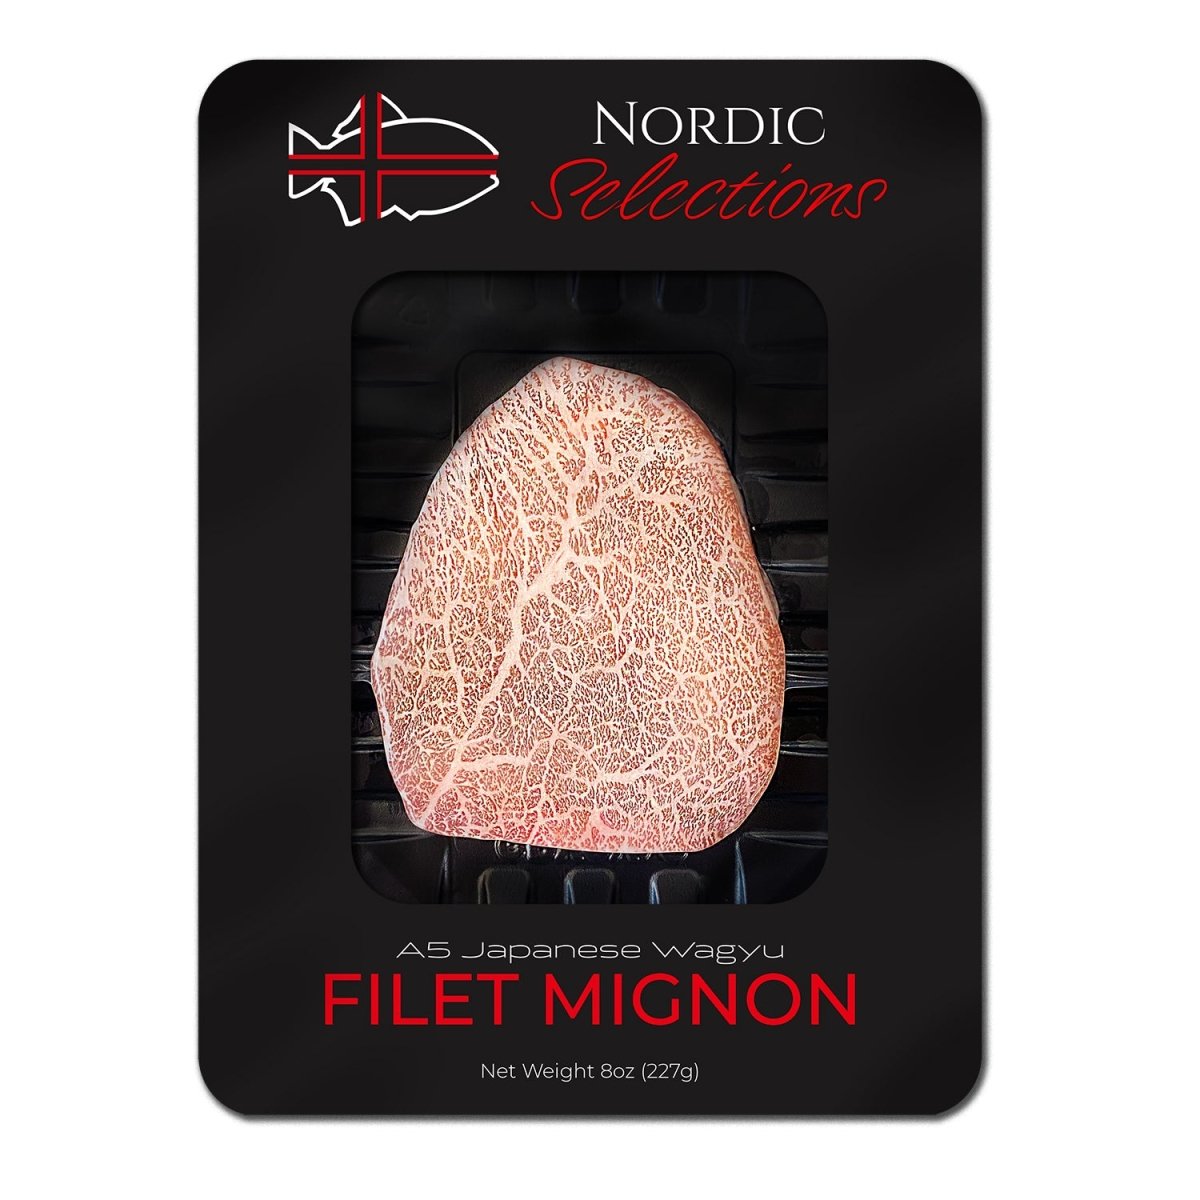 Wagyu Filet Mignon (4 oz.) - 2 Pack